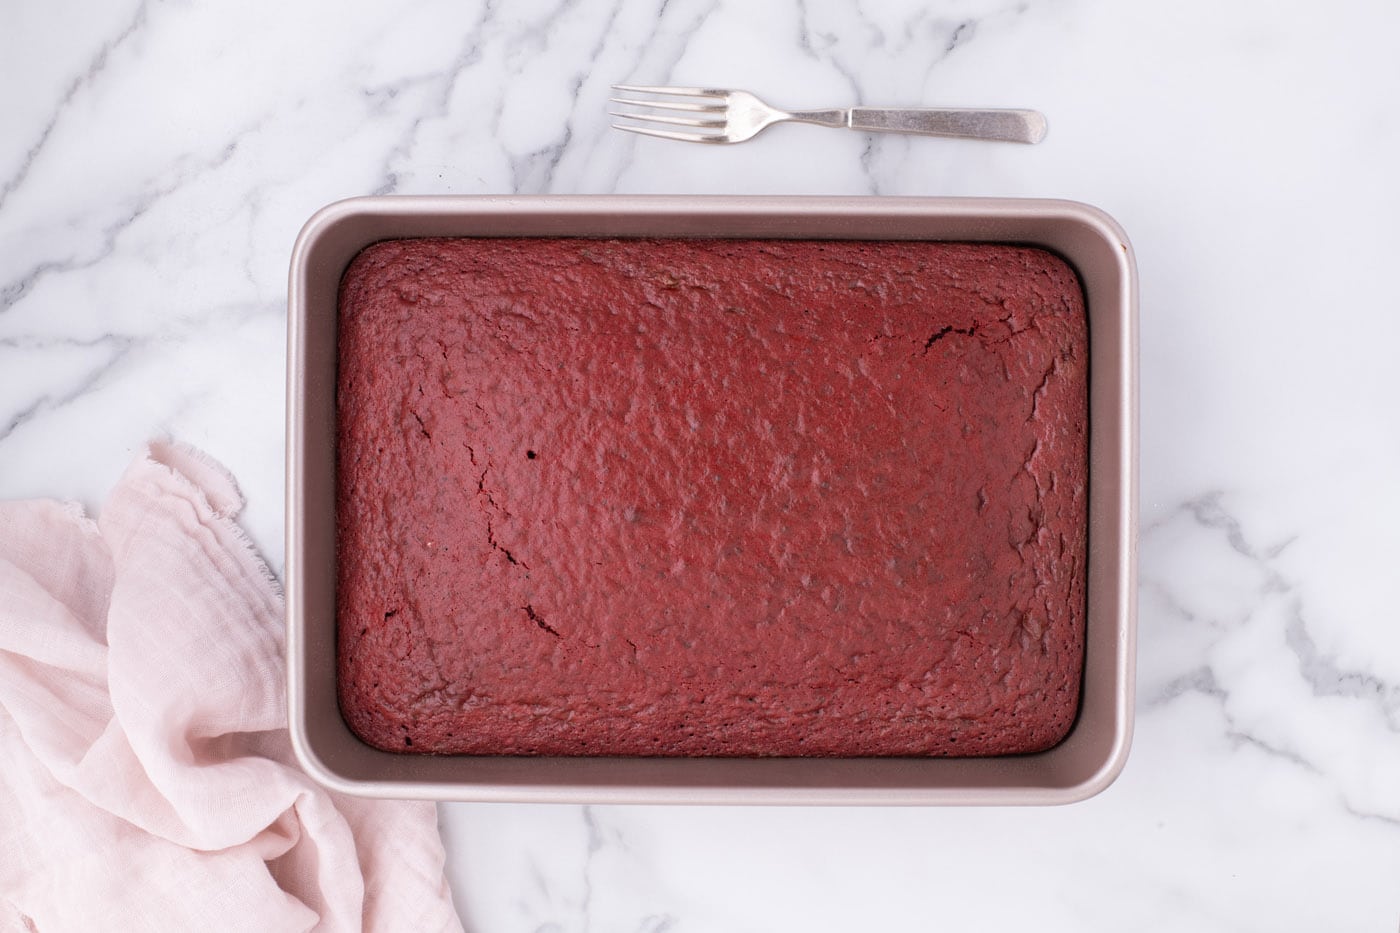 baked red velvet cake in a pan